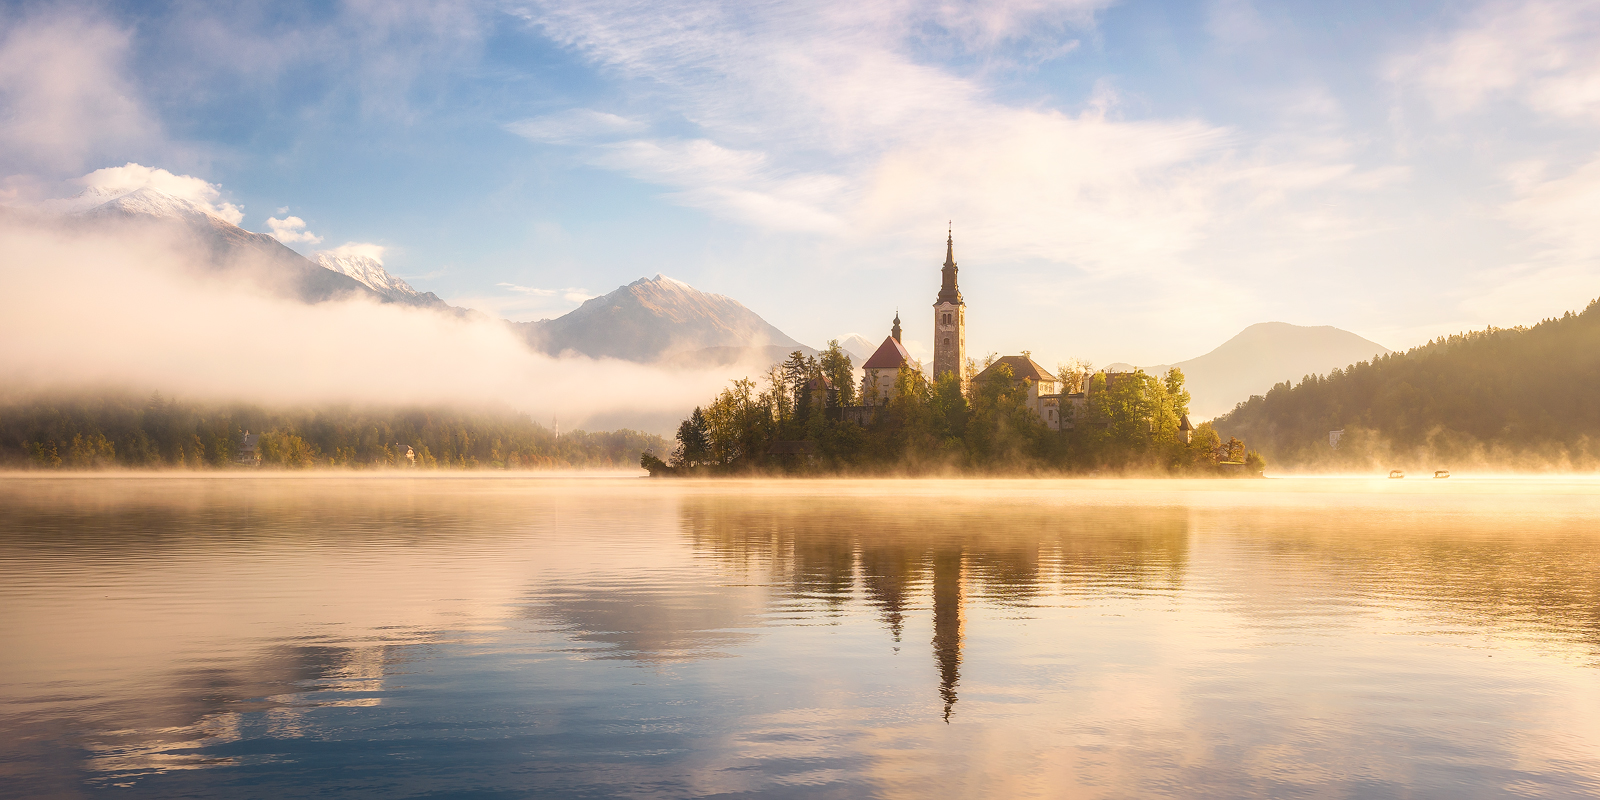 A golden morning in Slovenia